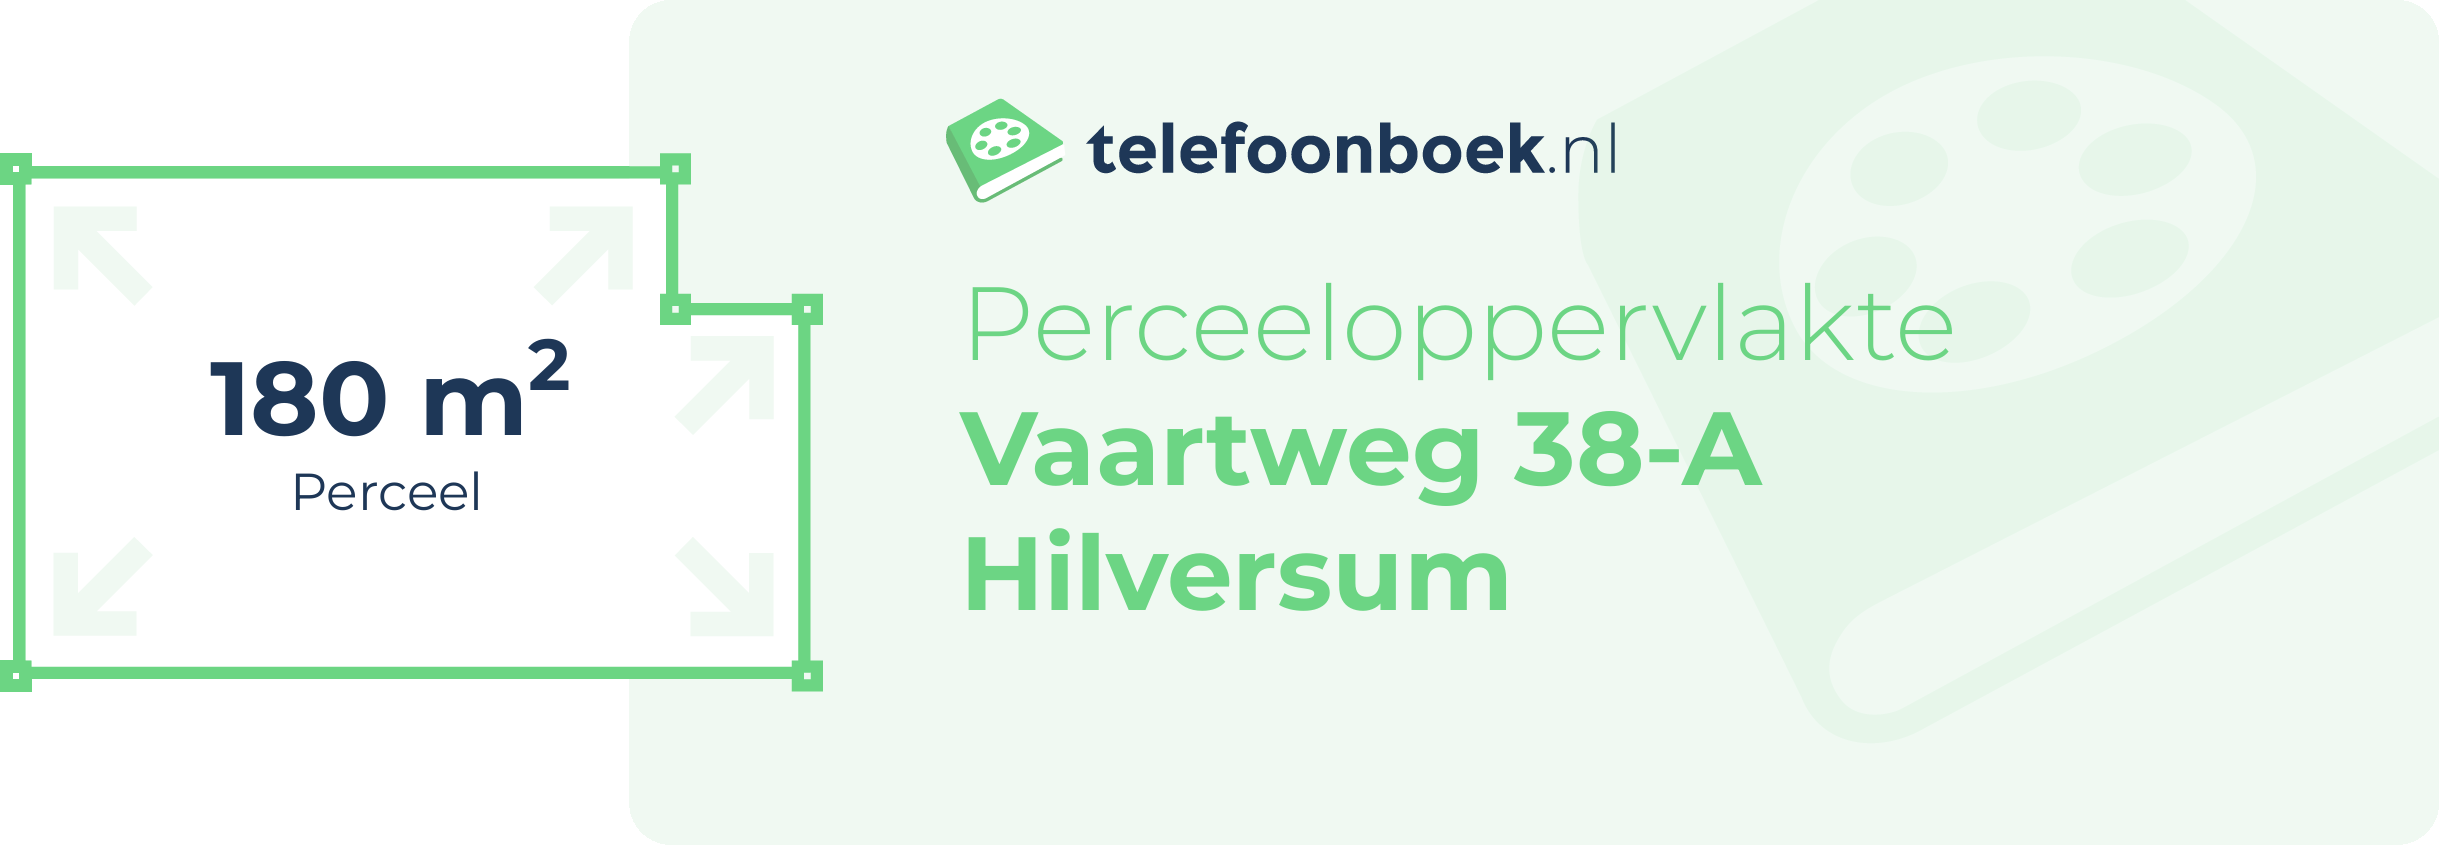 Perceeloppervlakte Vaartweg 38-A Hilversum